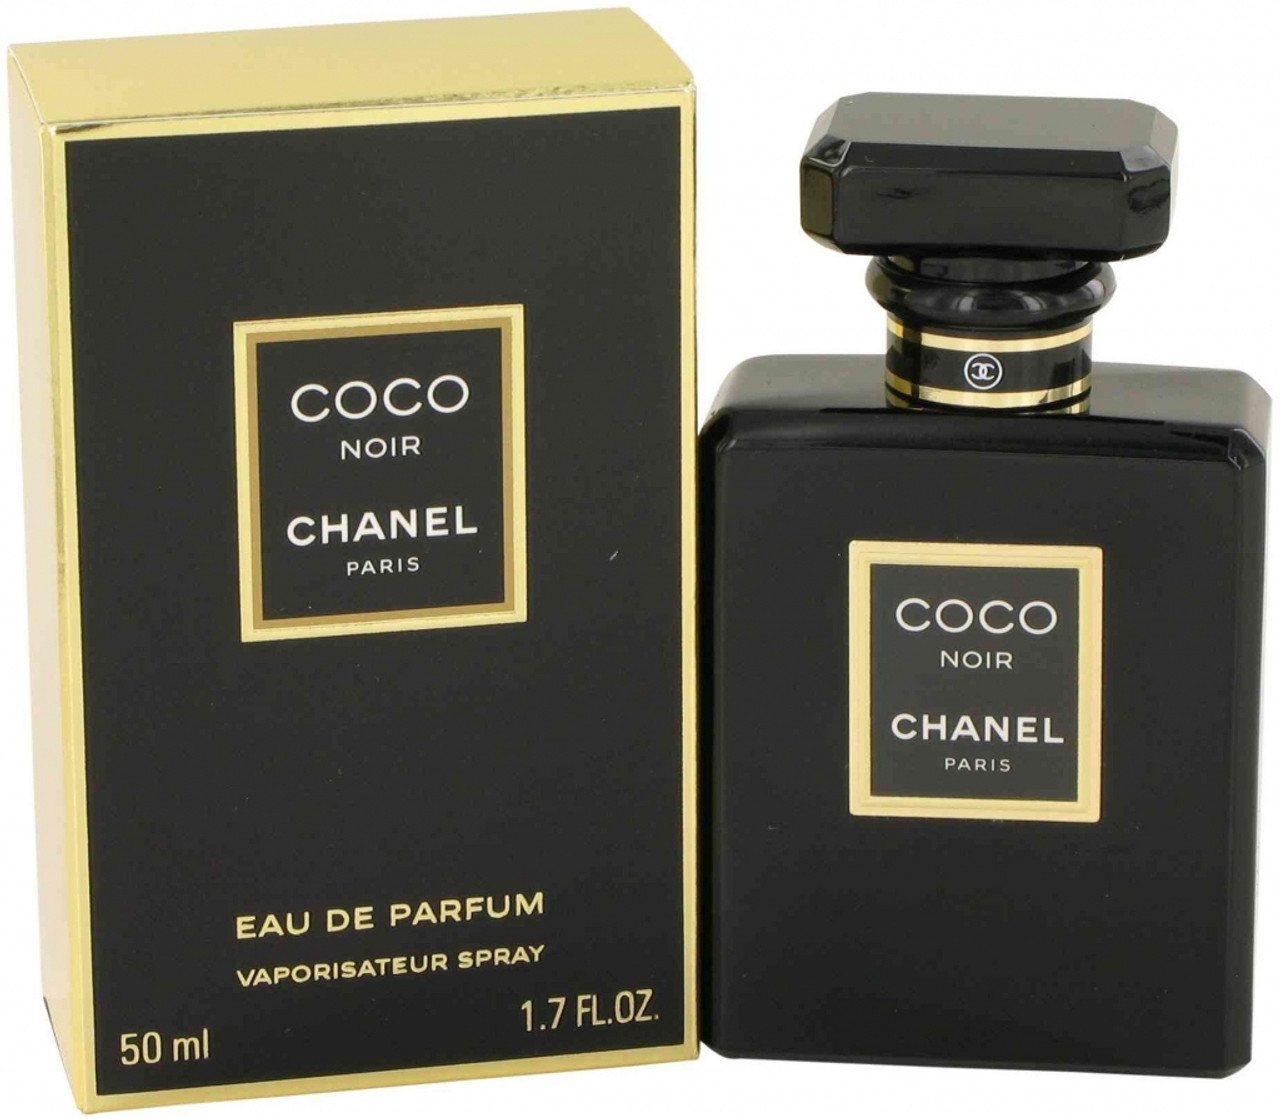 Coco Eau De Parfum Spray 50ml - Chanel